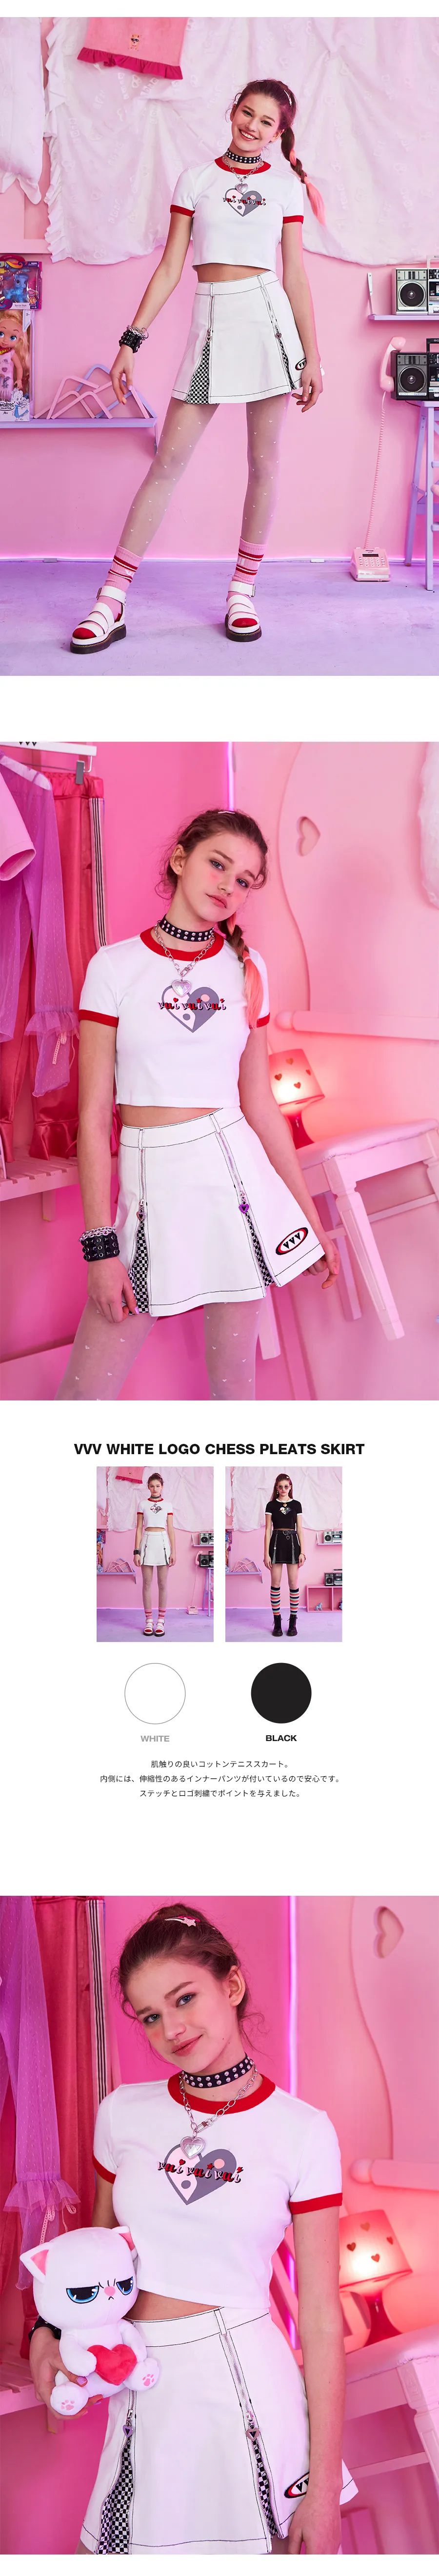 *VVV*ホワイトロゴチェスプリーツスカート | 詳細画像3